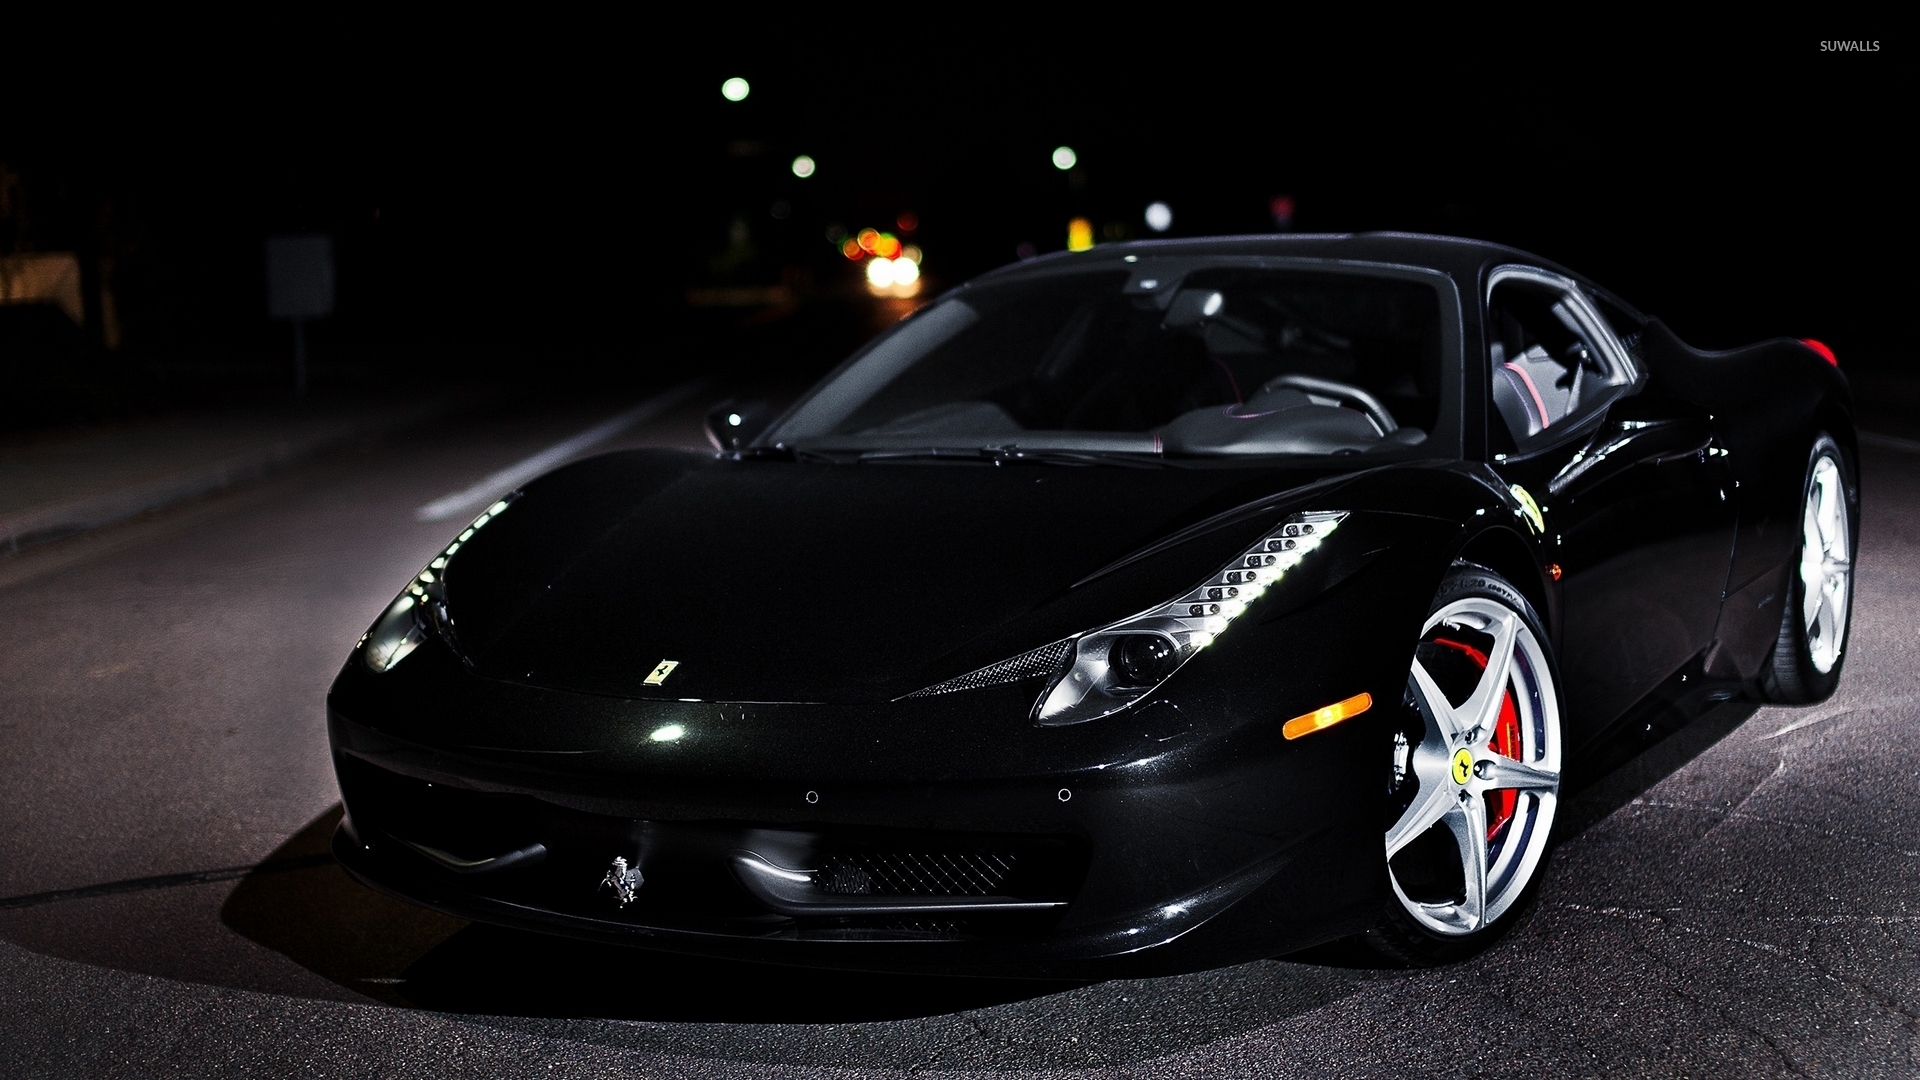 Black Ferrari Wallpaper Hd 1080p , HD Wallpaper & Backgrounds